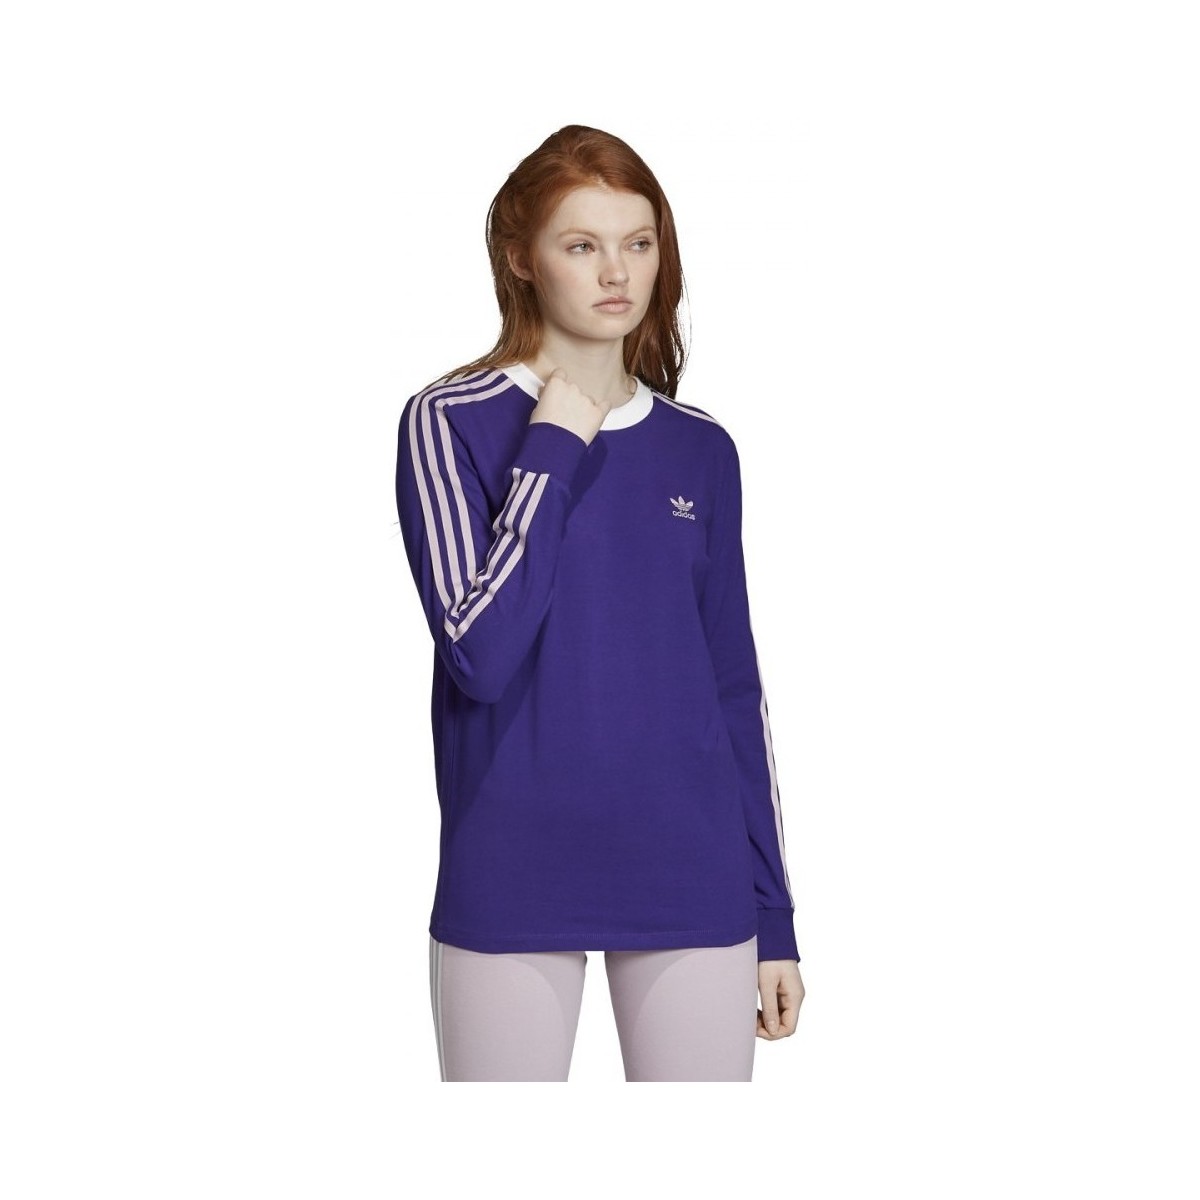 Textiel Dames T-shirts & Polo’s adidas Originals 3 Str Ls Tee Violet